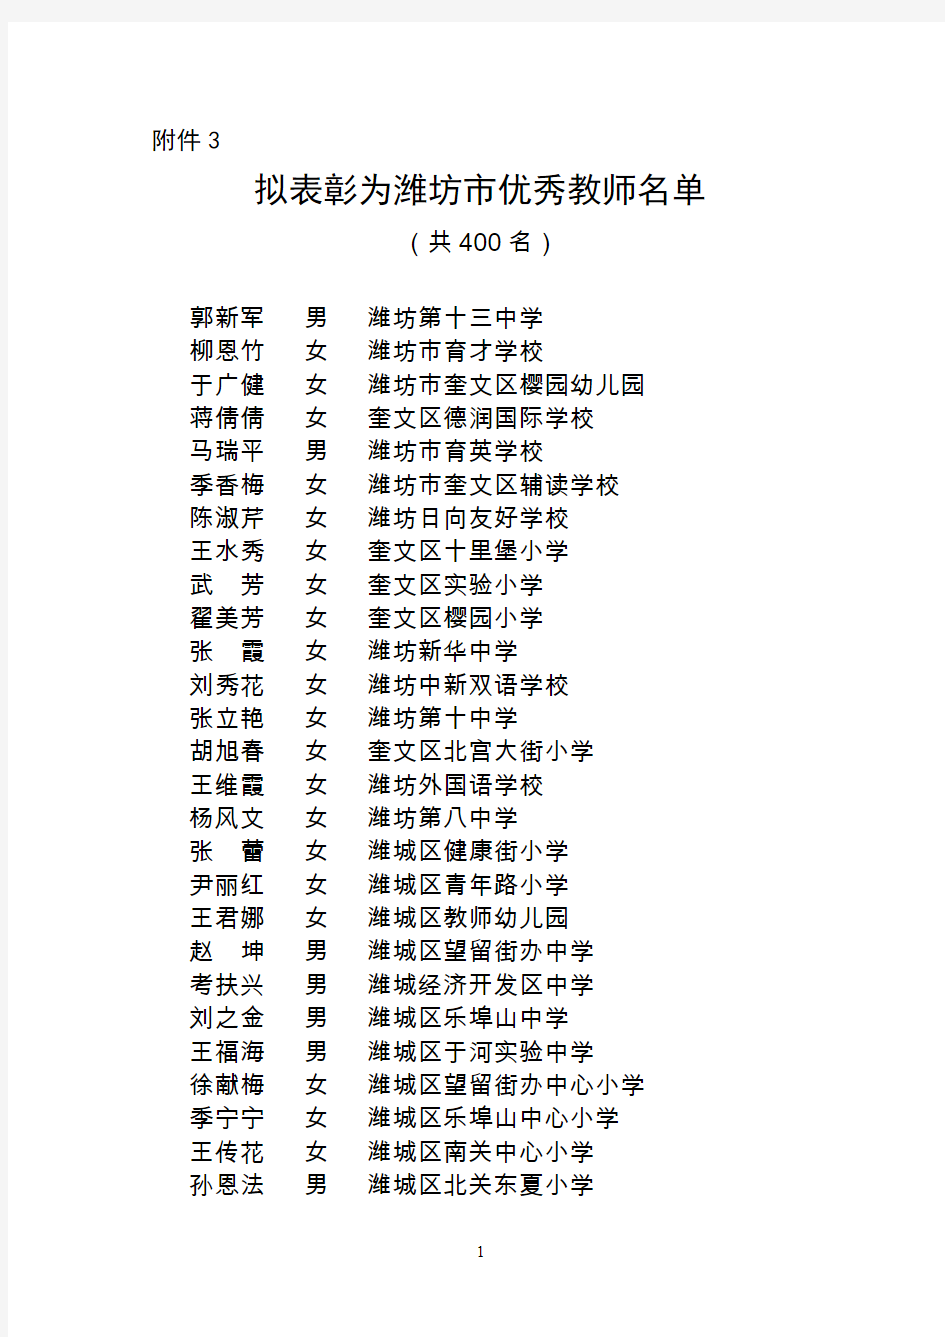 2014年潍坊市优秀教师、优秀教育工作者名单